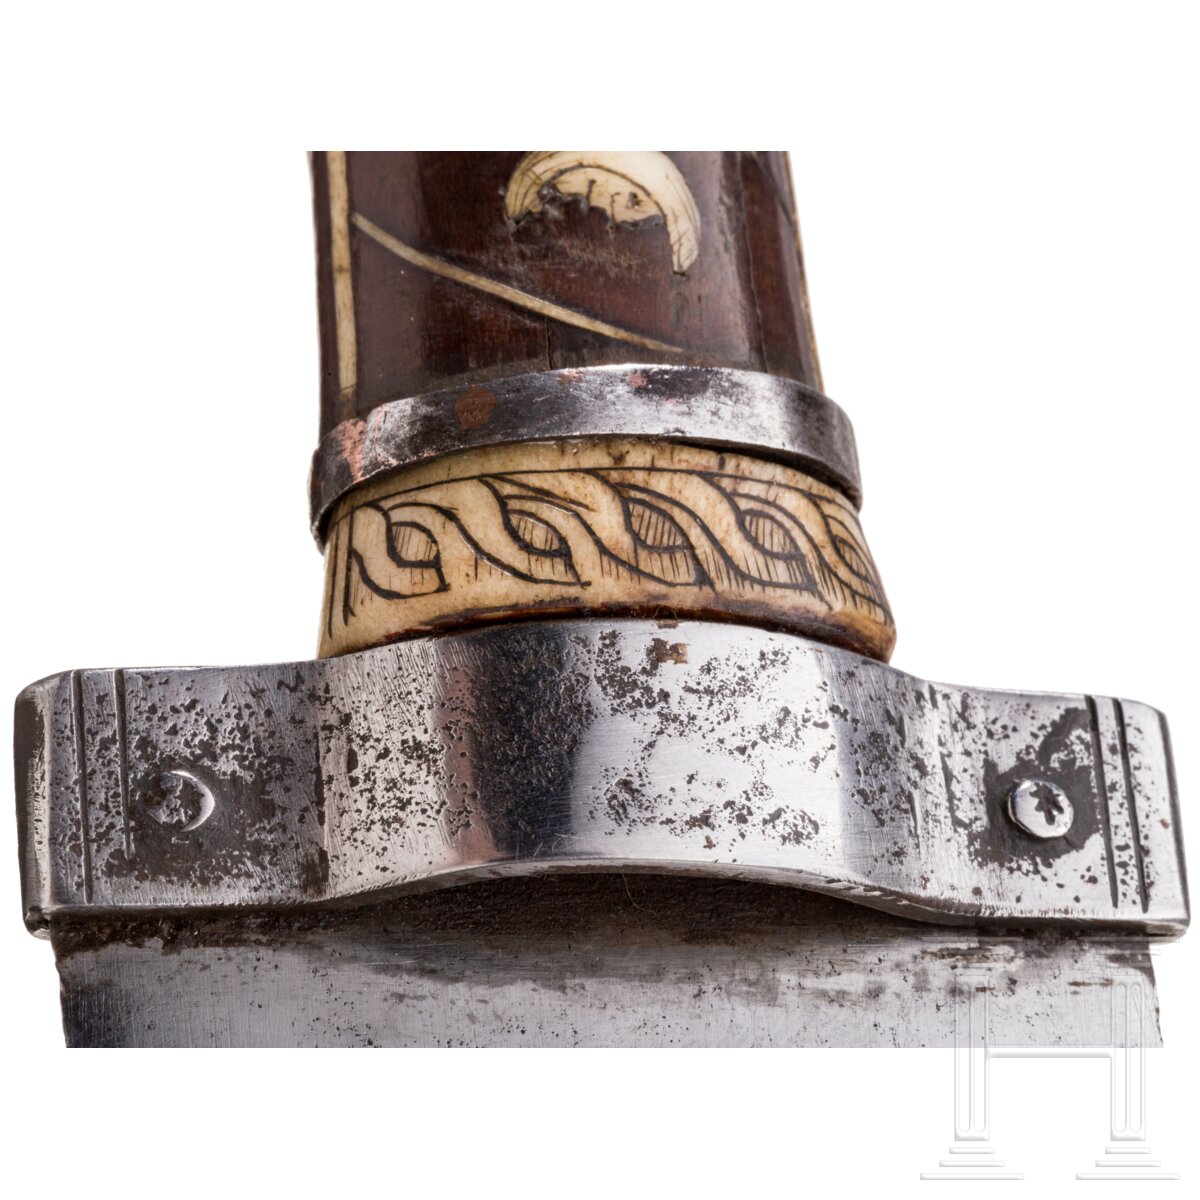 Höfisches Renaissance-Vorlegemesser, süddeutsch, um 1600 - Bild 8 aus 8